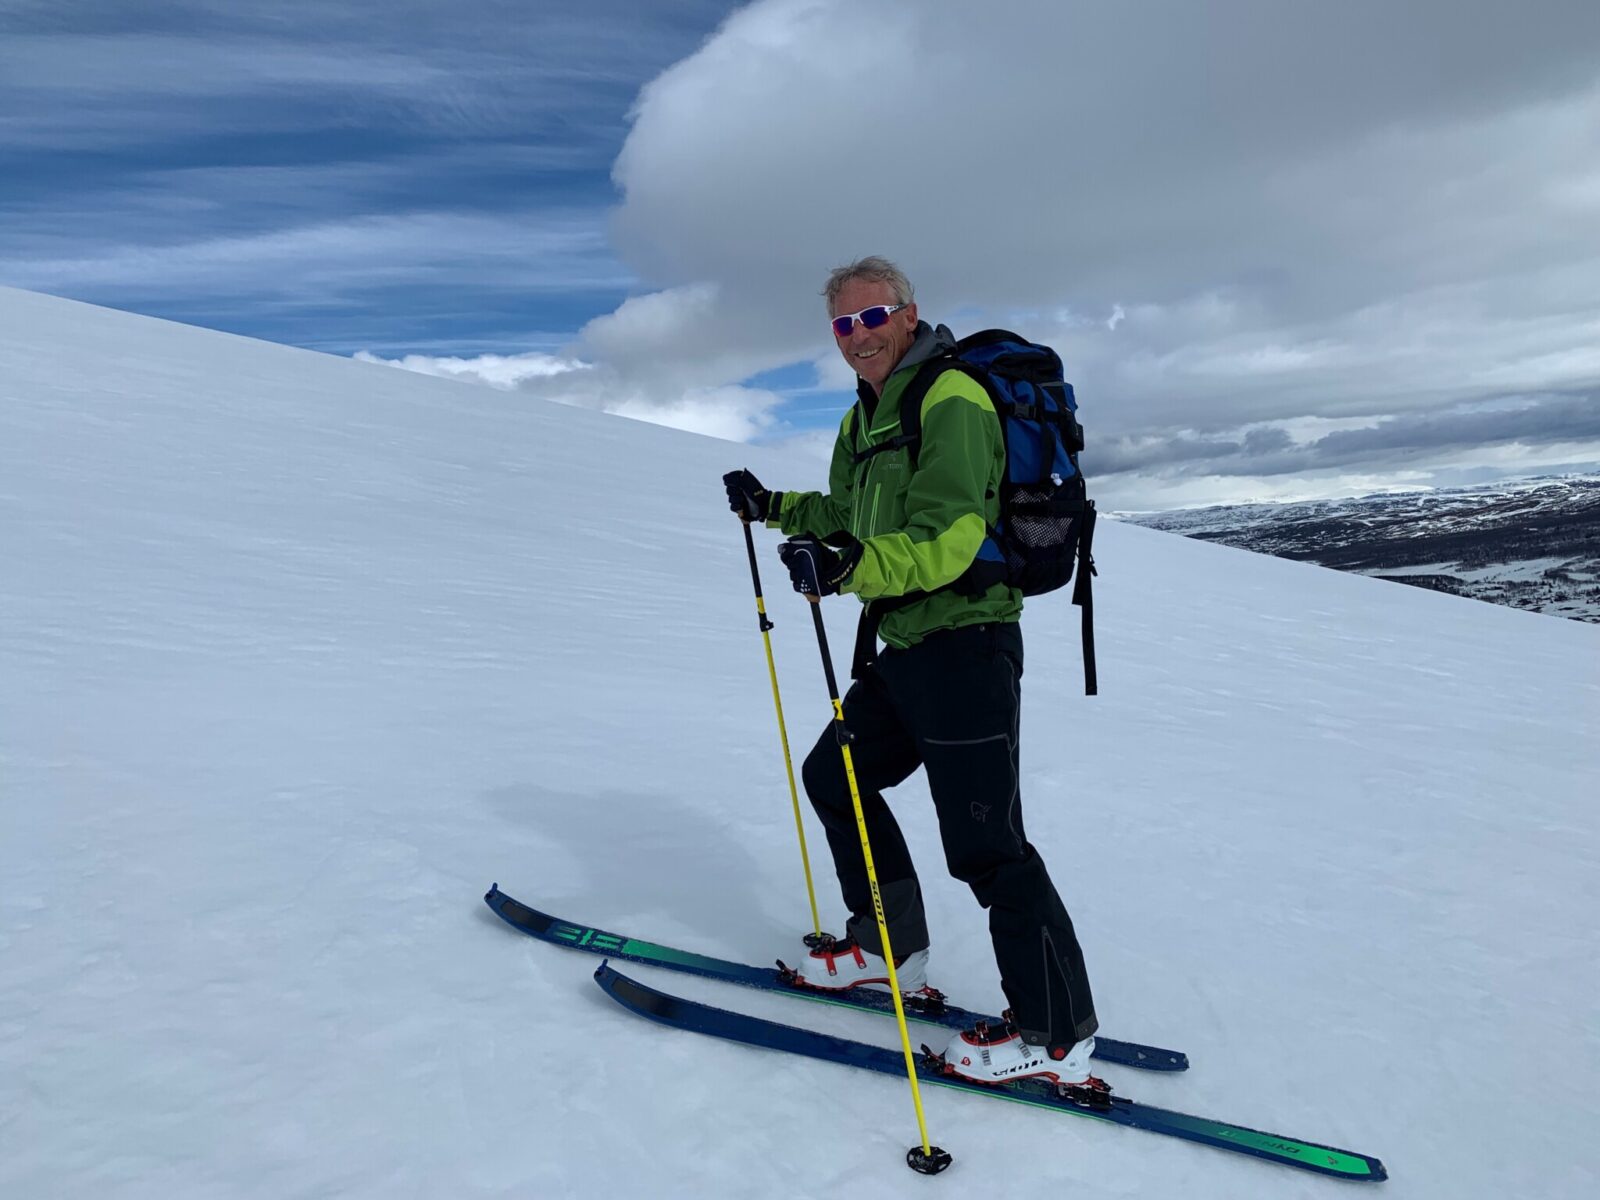 Morten on a ski slope